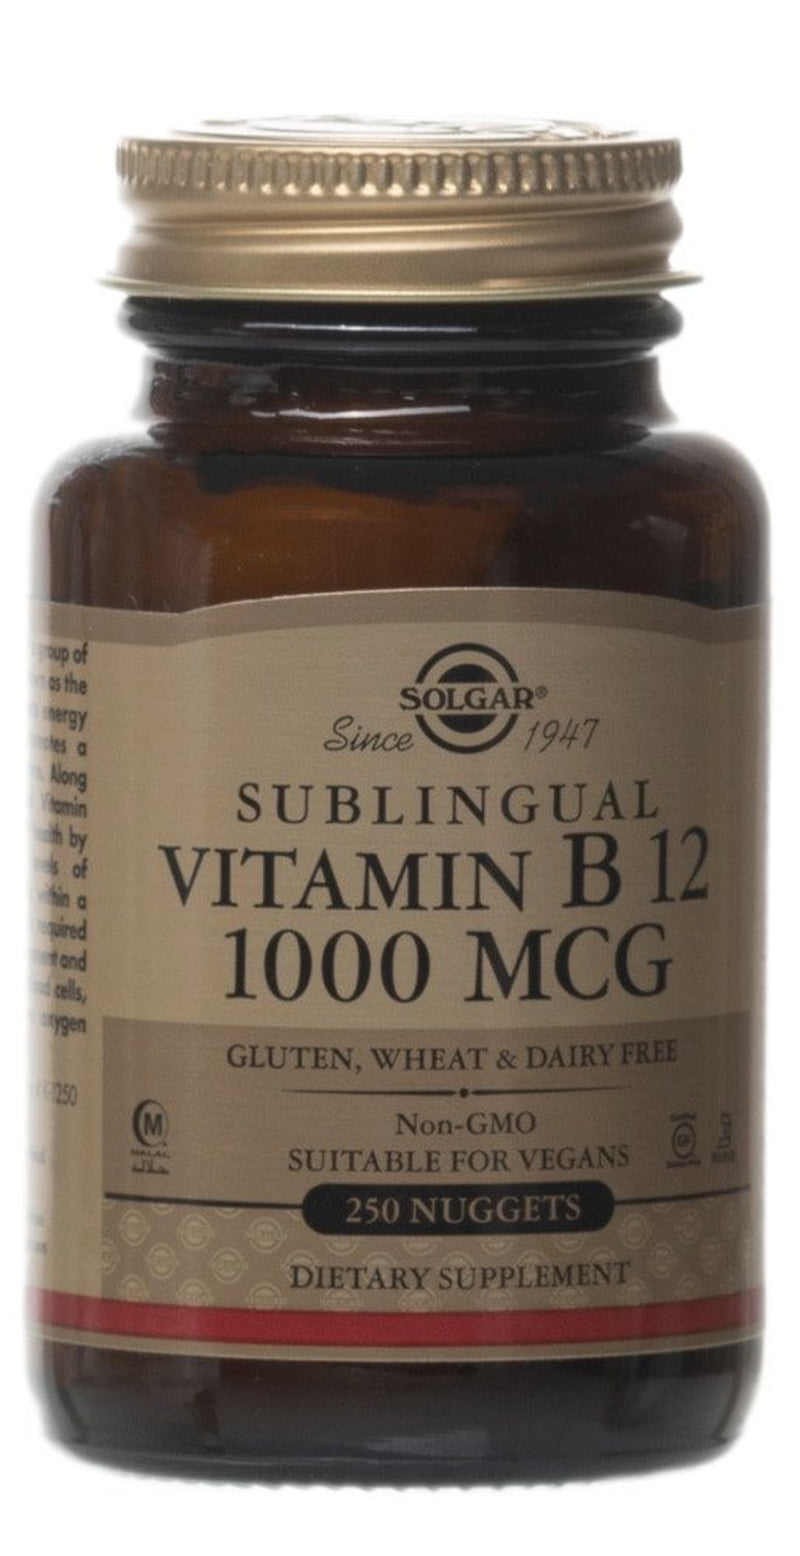 Solgar Vitamin B12 Sublingual -- 1000 Mcg - 250 Nuggets